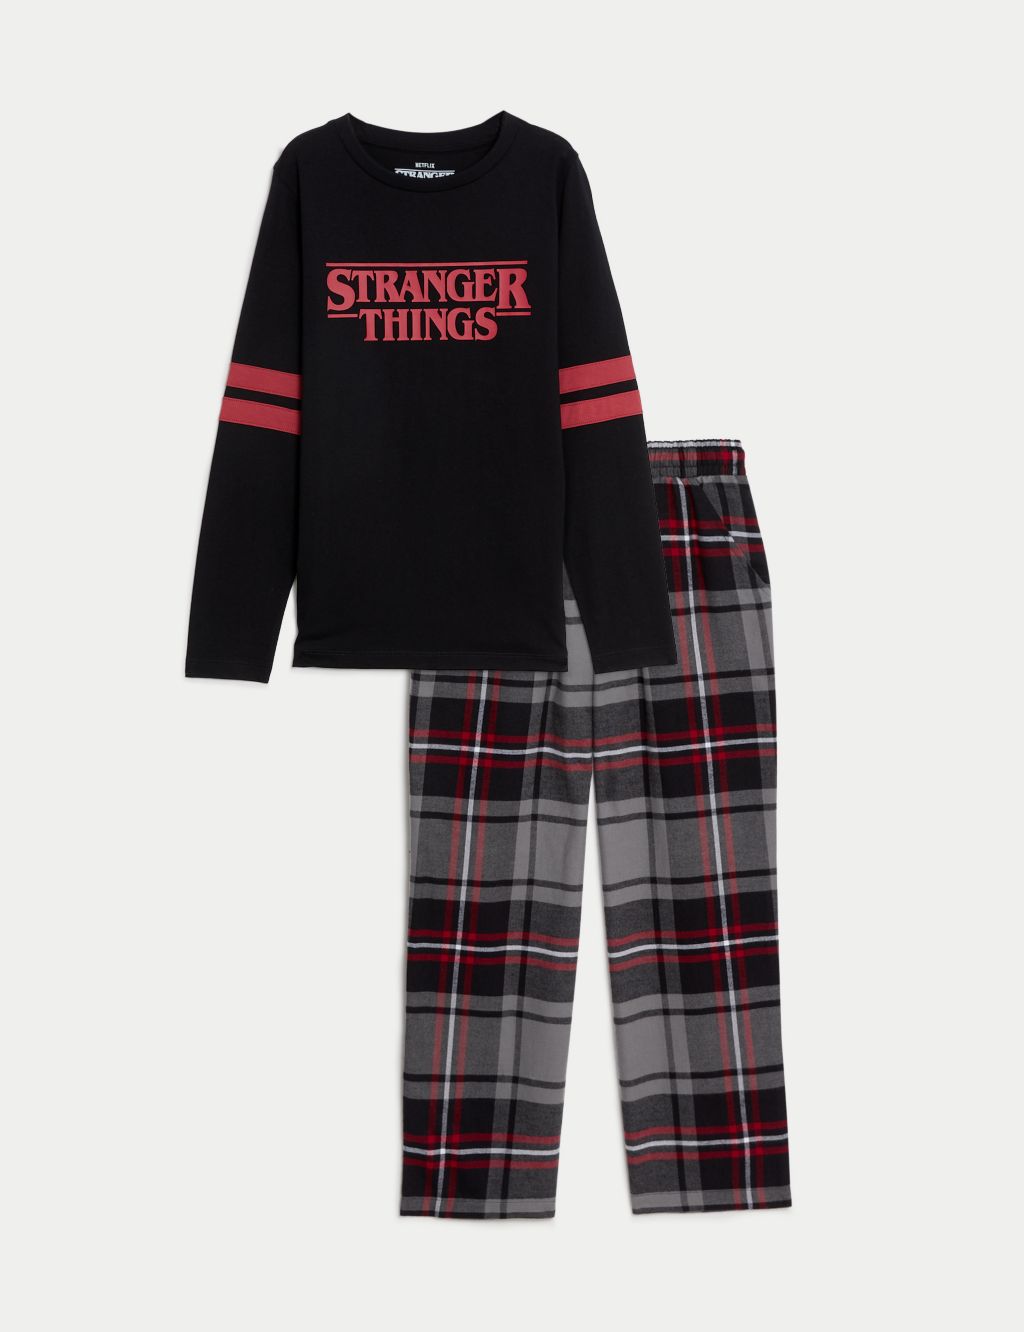 Stranger Things™ Pyjamas (6-16 Yrs) image 2